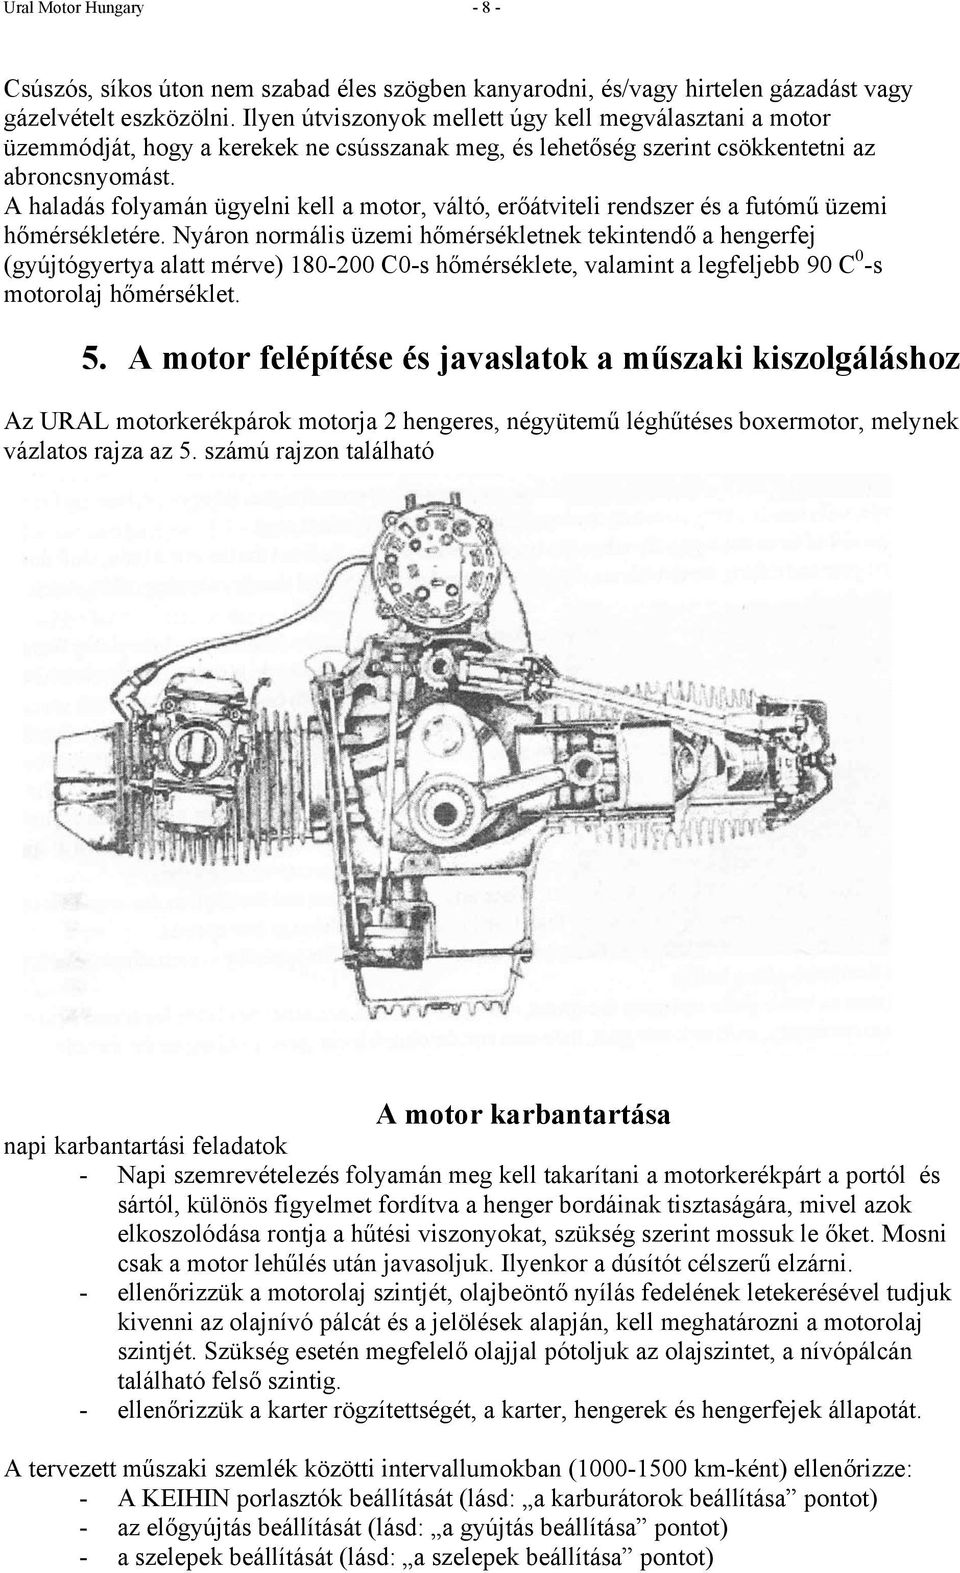 URAL motorkerékpárok felhasználói leírása. IMZ /38 Wolf IMZ /39 SOLO  CLASSIC - PDF Ingyenes letöltés